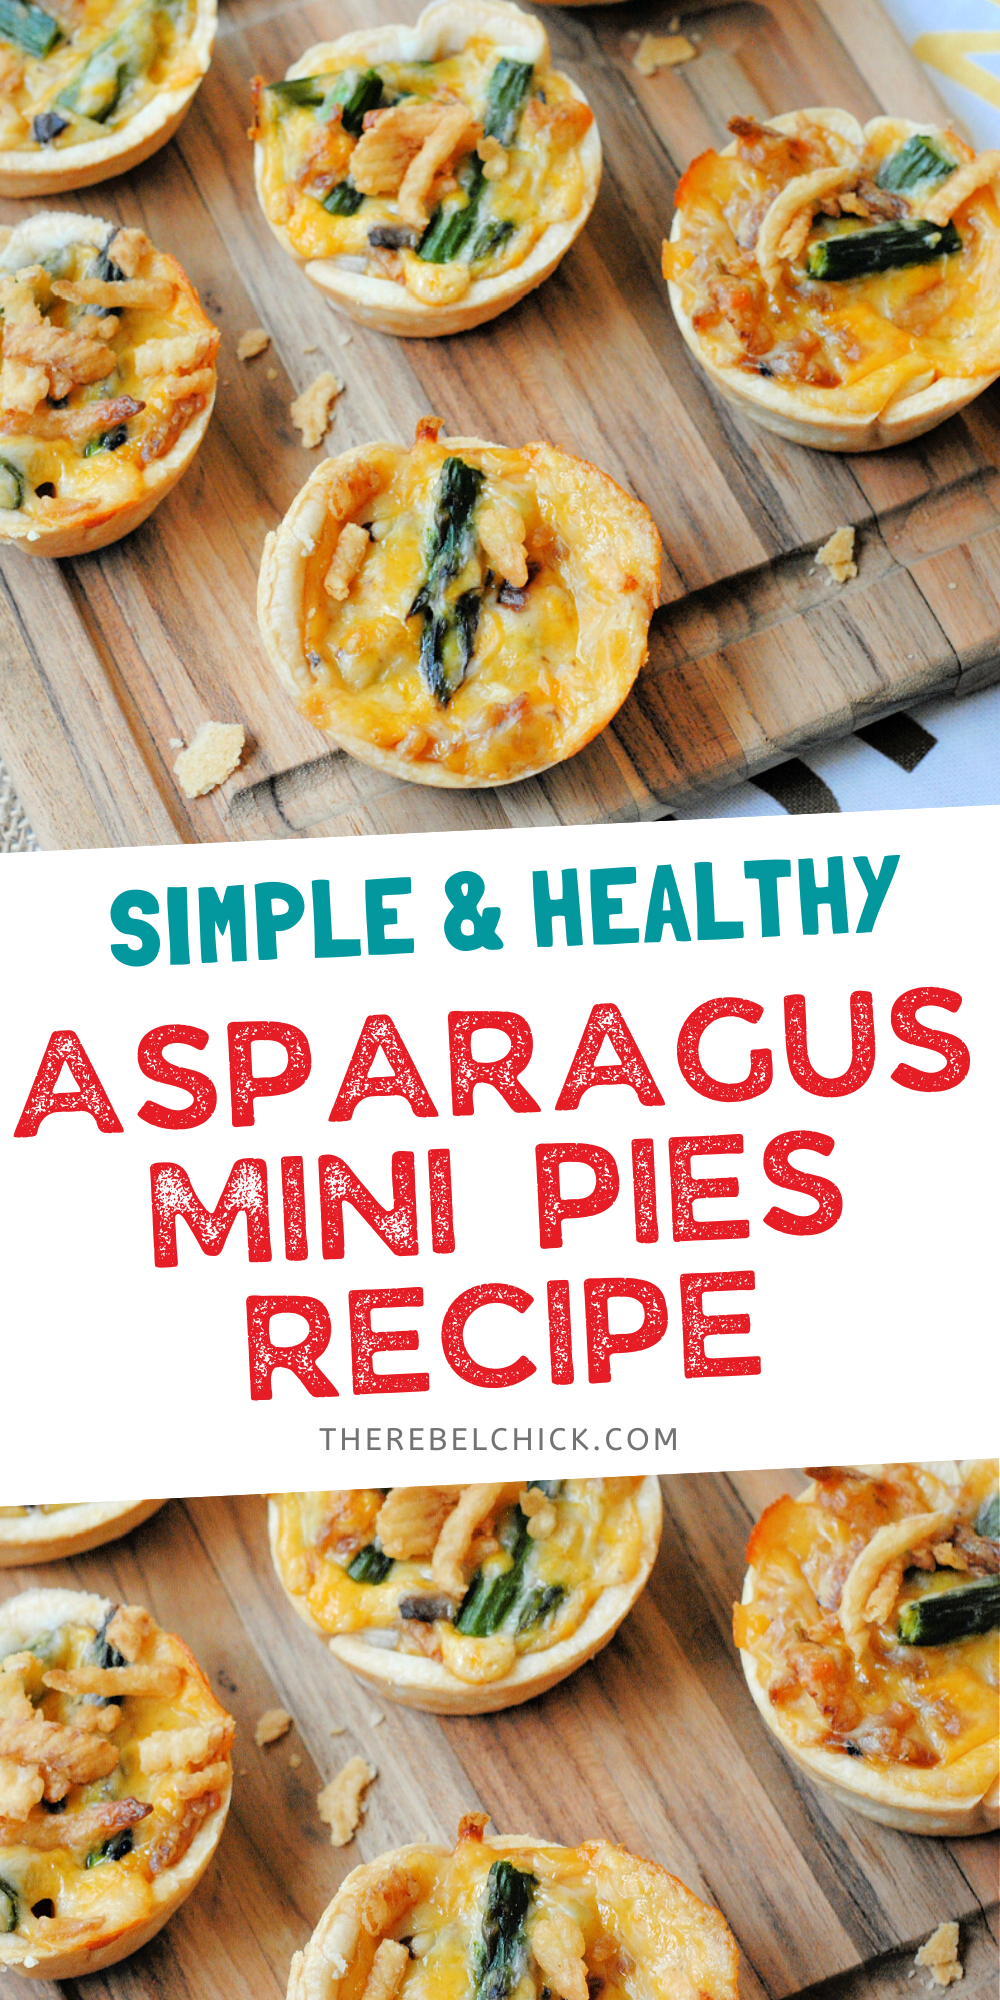 Asparagus Mini Pies Recipe